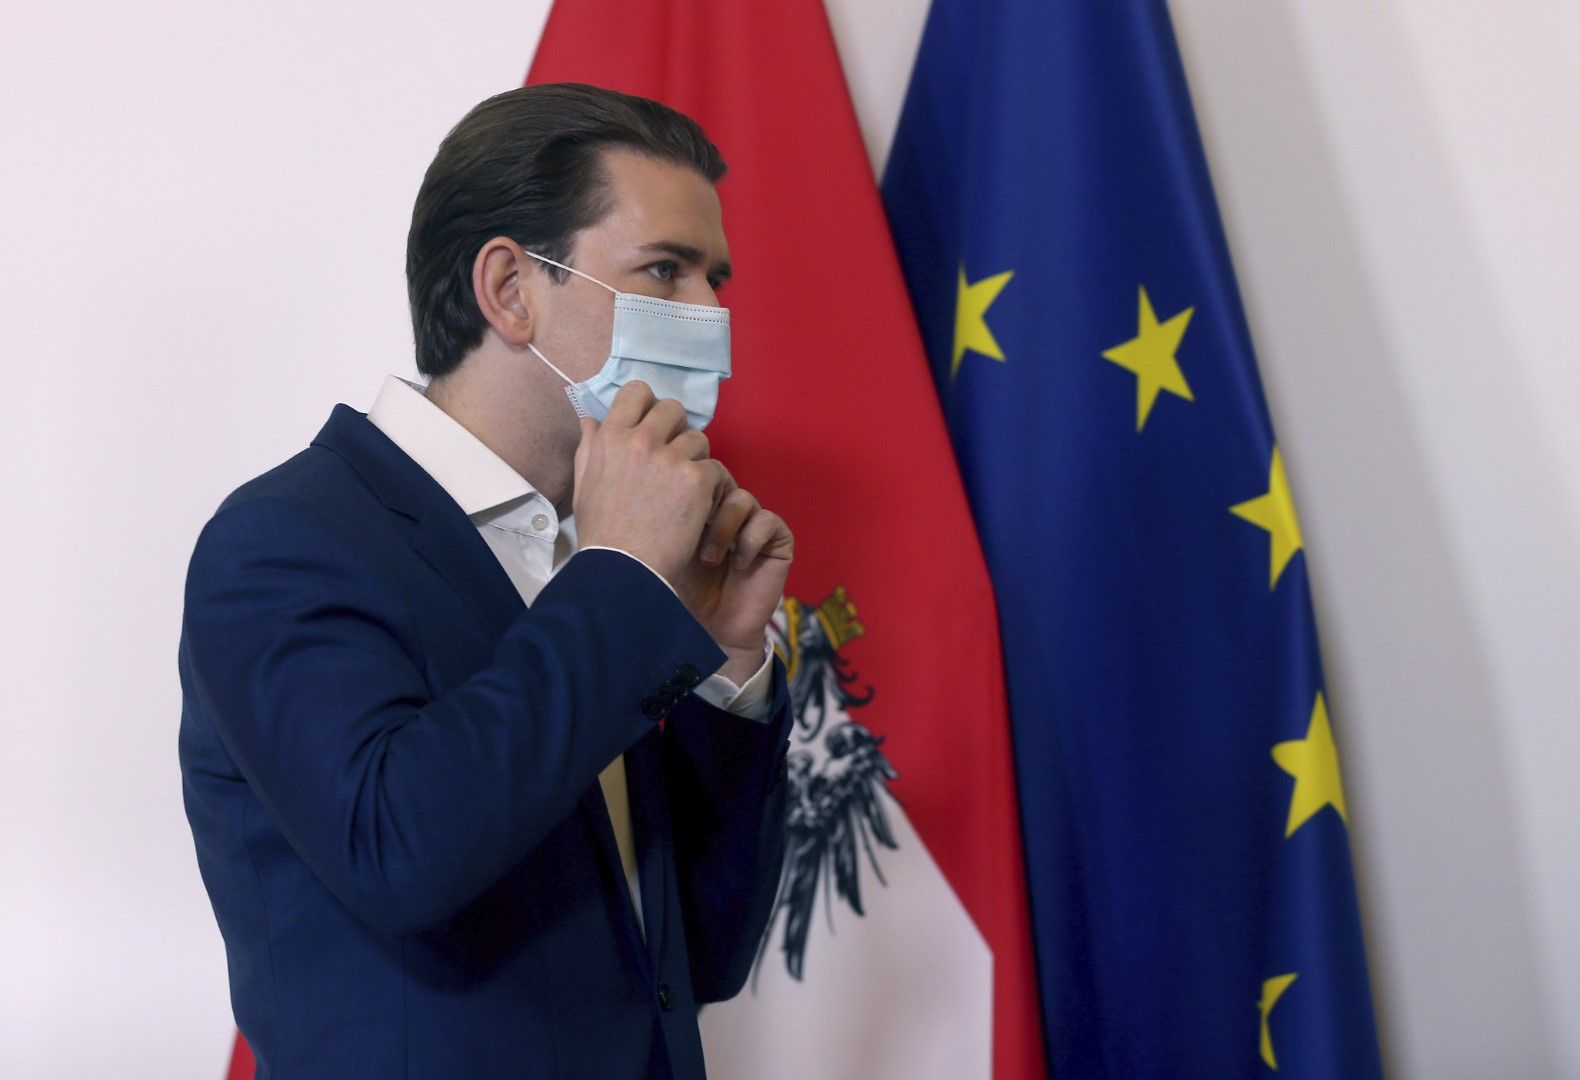 Младият канцлер на Австрия Себастиан Курц винаги е споделял консервативна фискална позиция в рамките на Европейския съюз